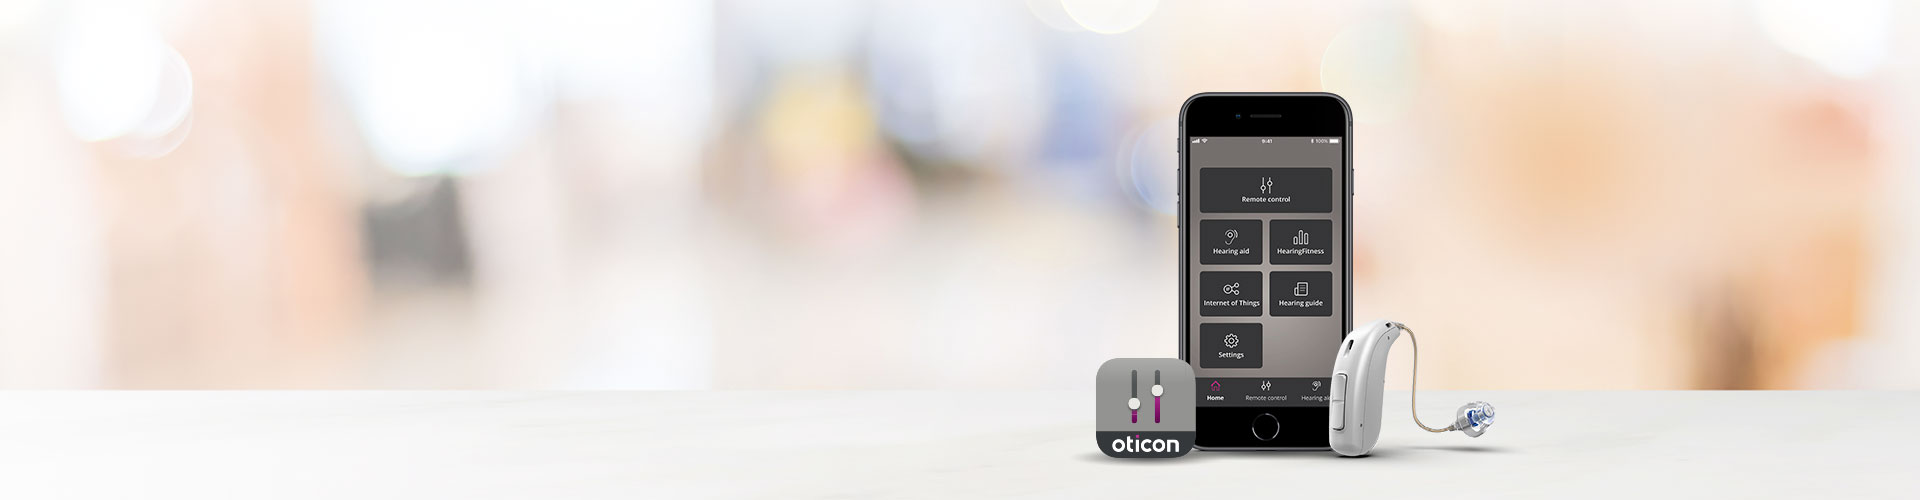 oticon-on-app-2020-banner-1920x500-v2